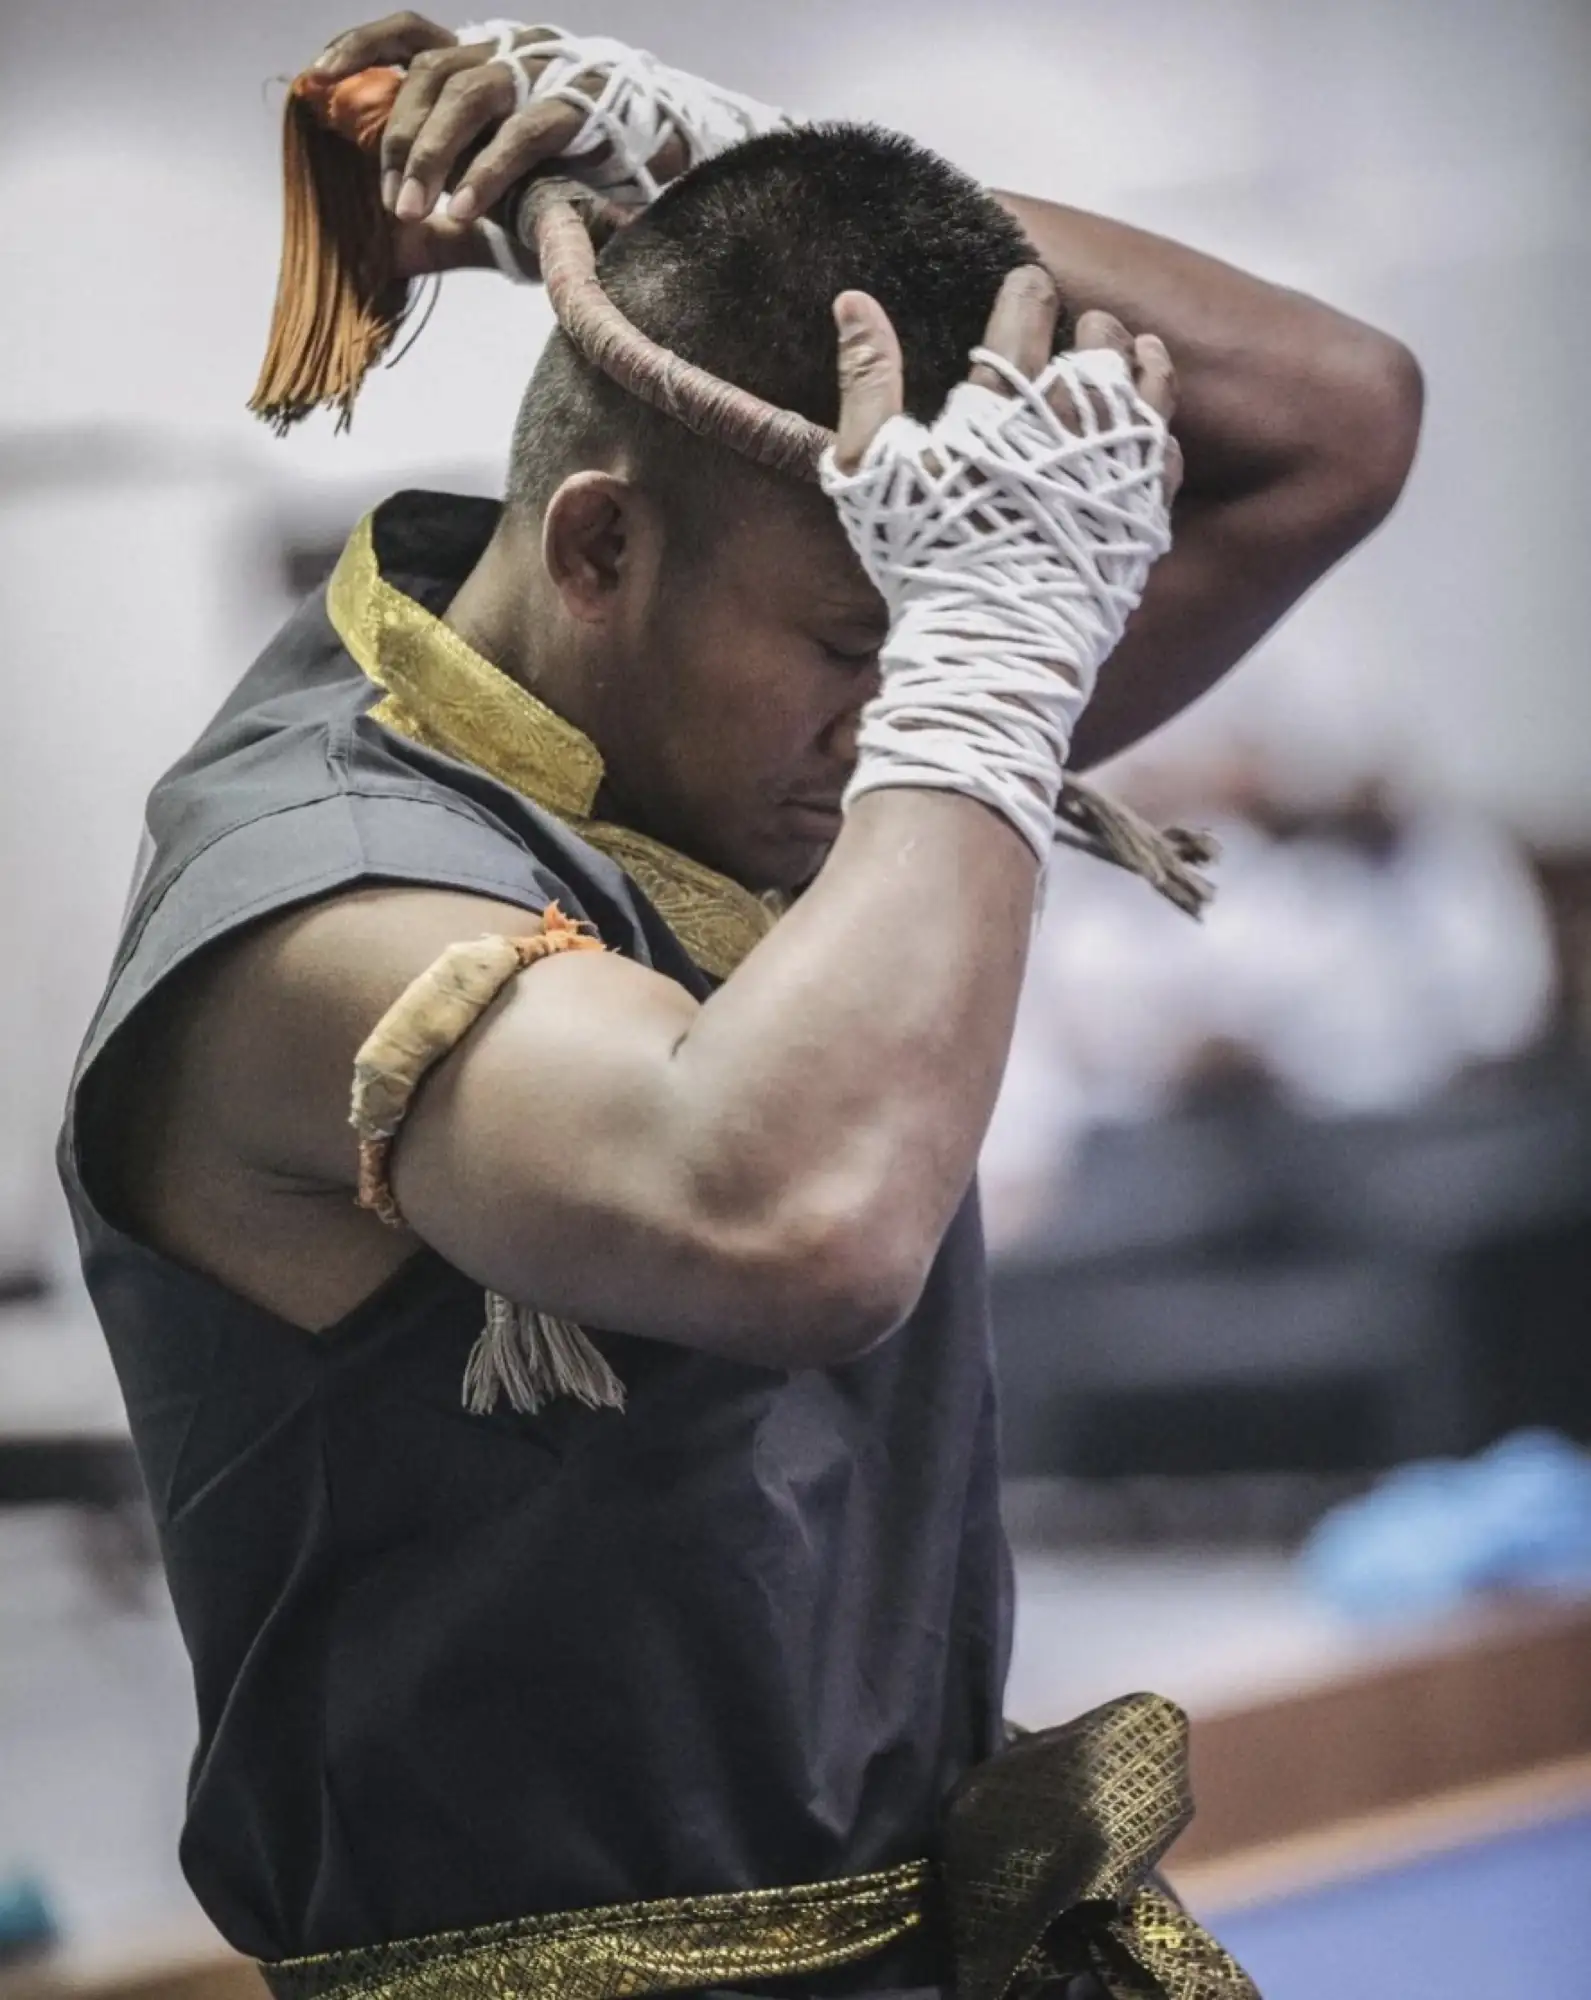 并不是所有人都那么容易就得到学习泰拳的机会。（图片来源：postjung）